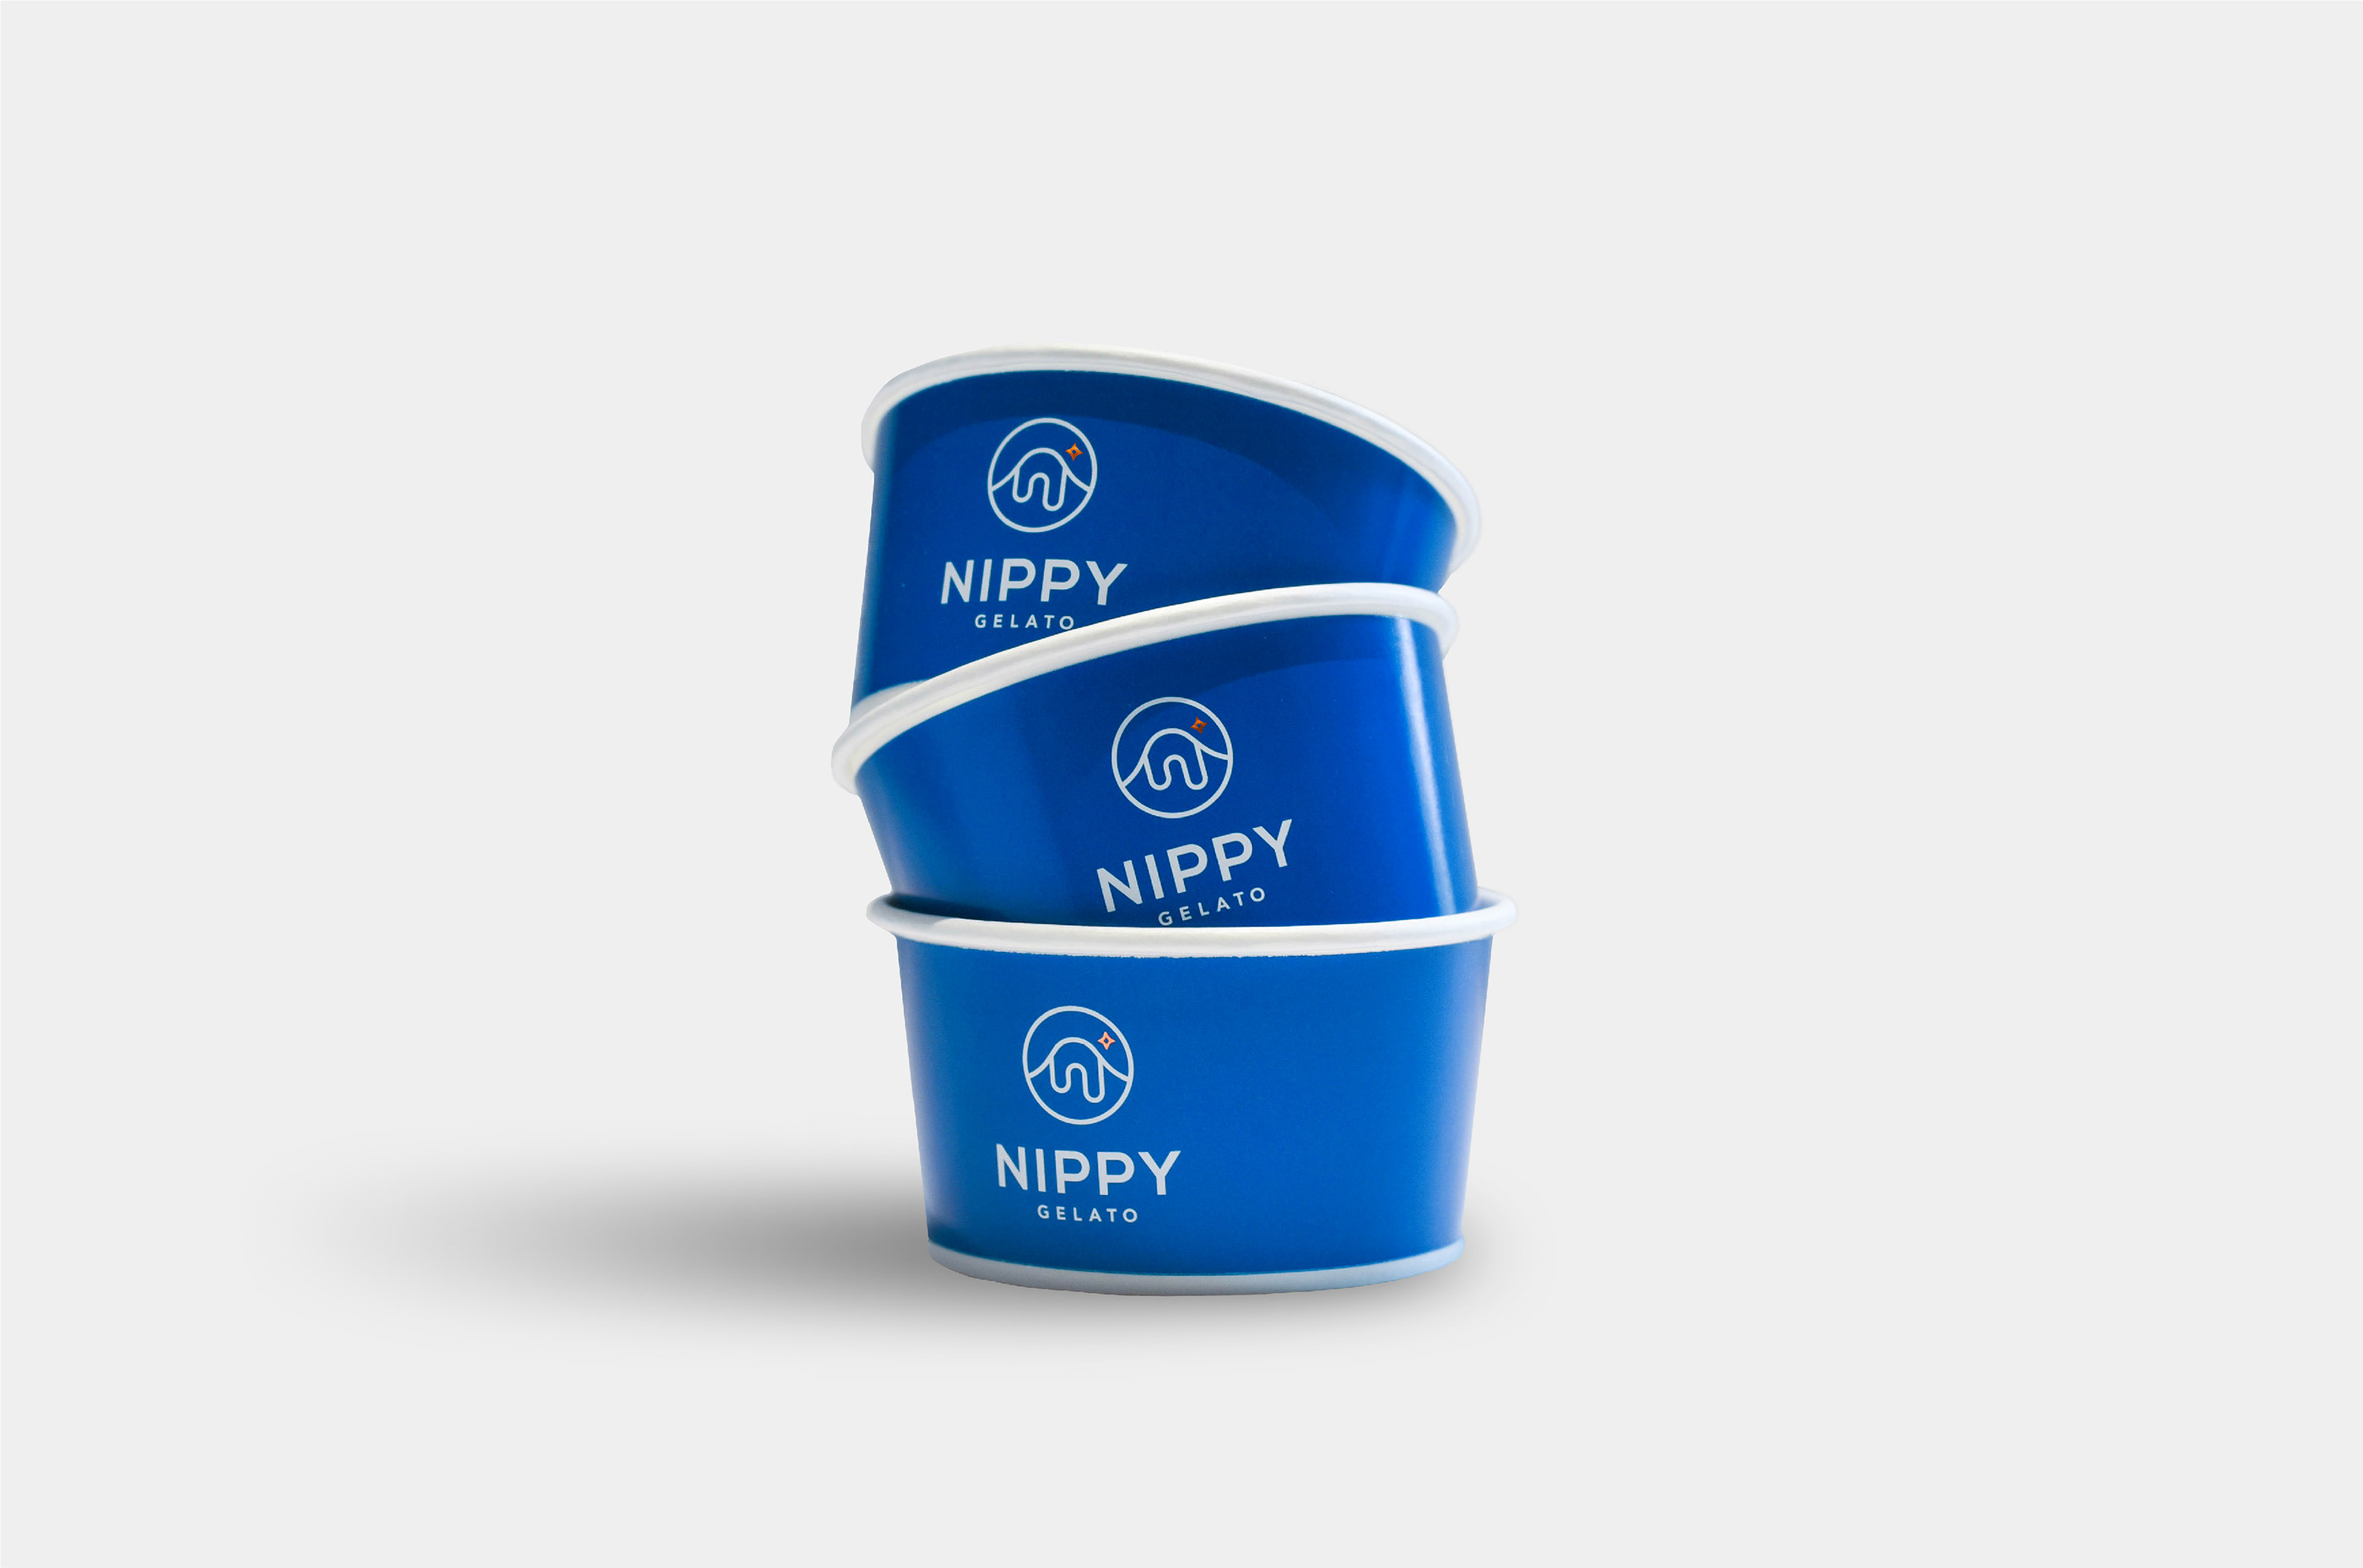 马来西亚Nippy Gelato冰淇淋店品牌形象设计